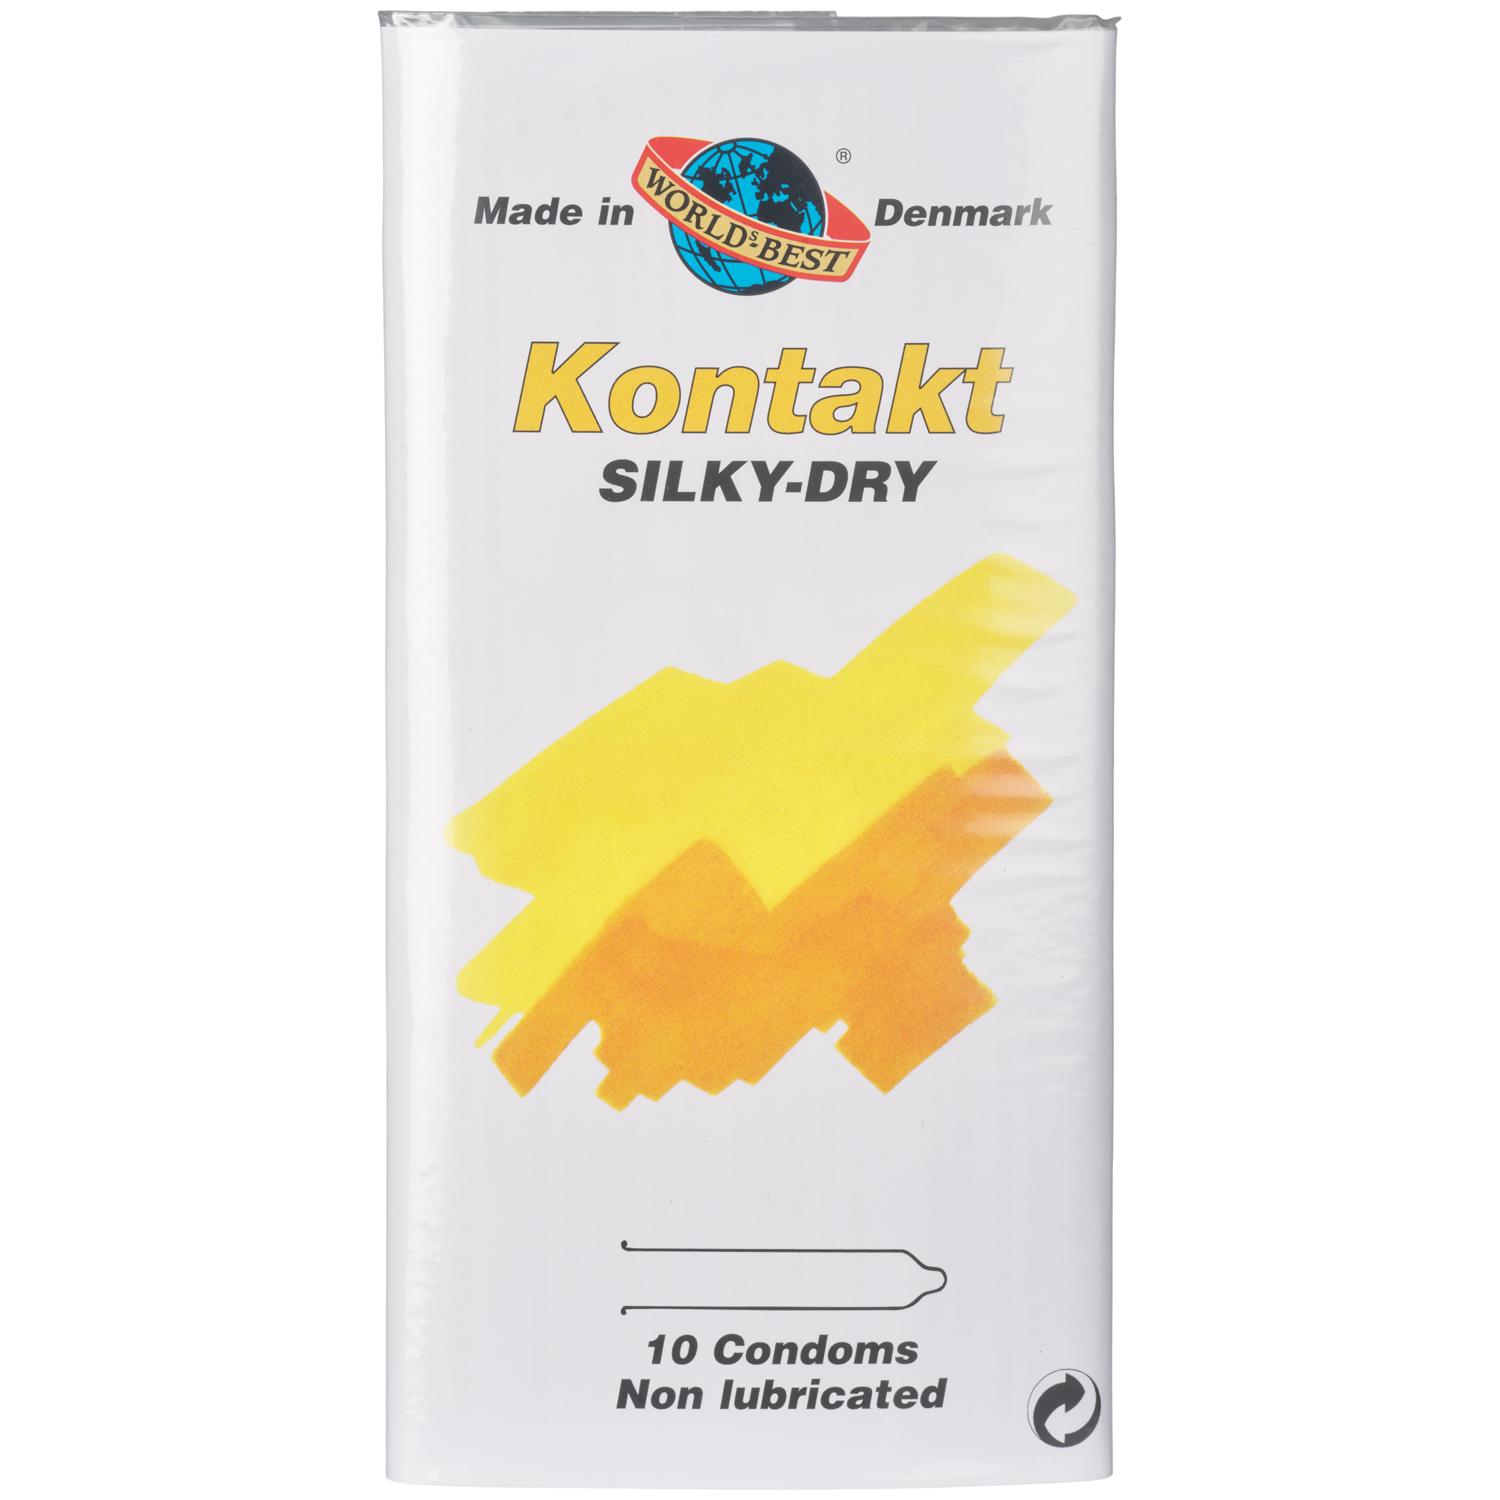 Worlds-Best Kontakt Silky-Dry Osmorda Kondomer 10 st  - Klar - L